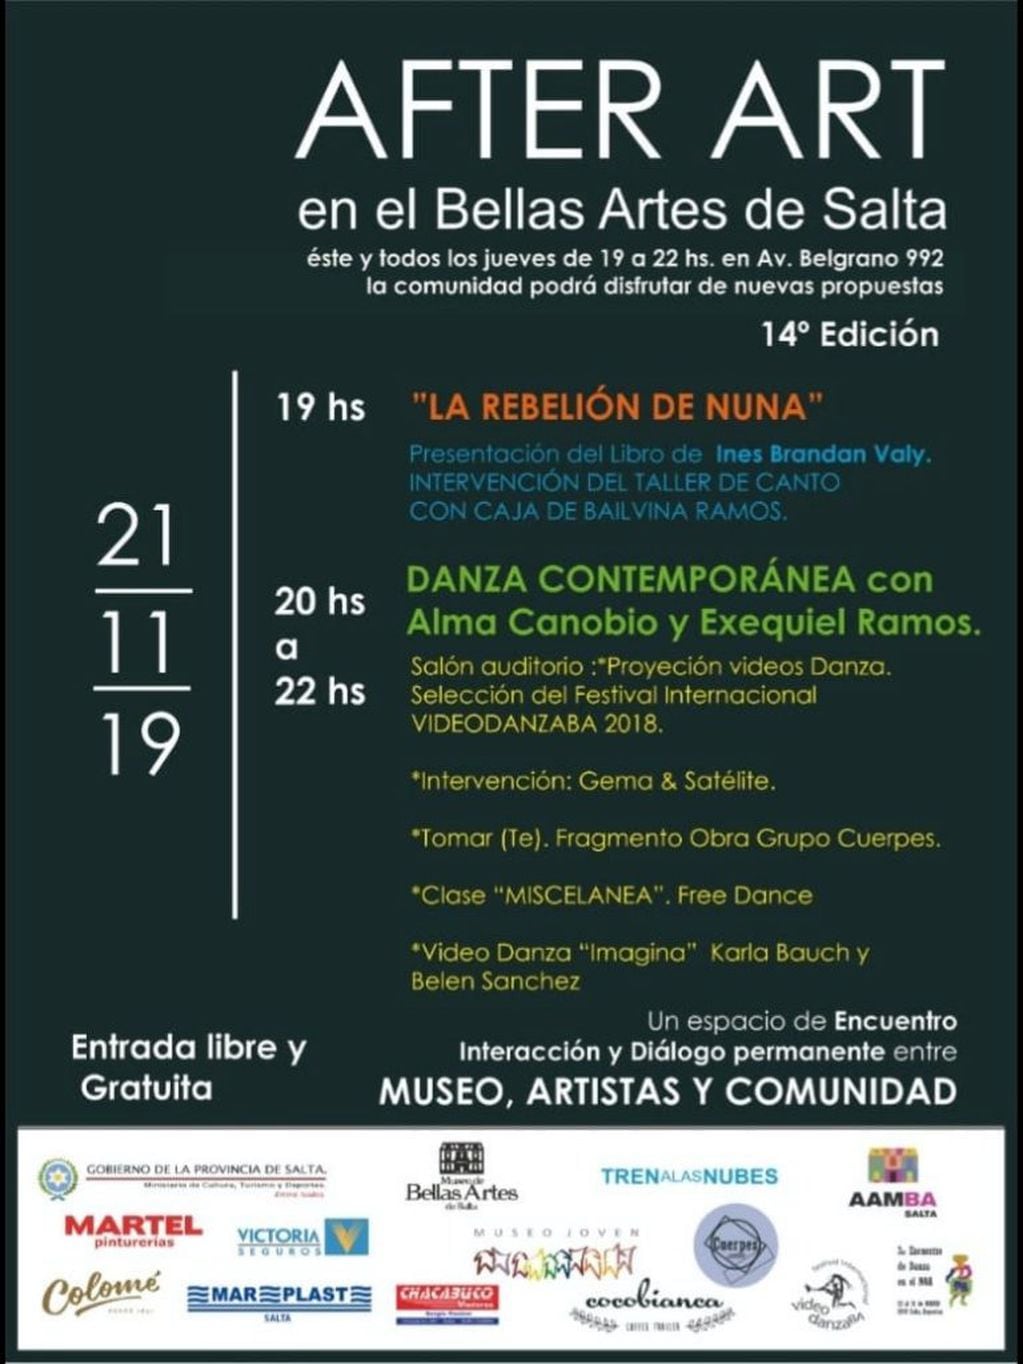 AFTER ART con la presentación de La Rebelión de Nuna de Inés Brandan Valy (Facebook Museo Bellas Artes Salta)